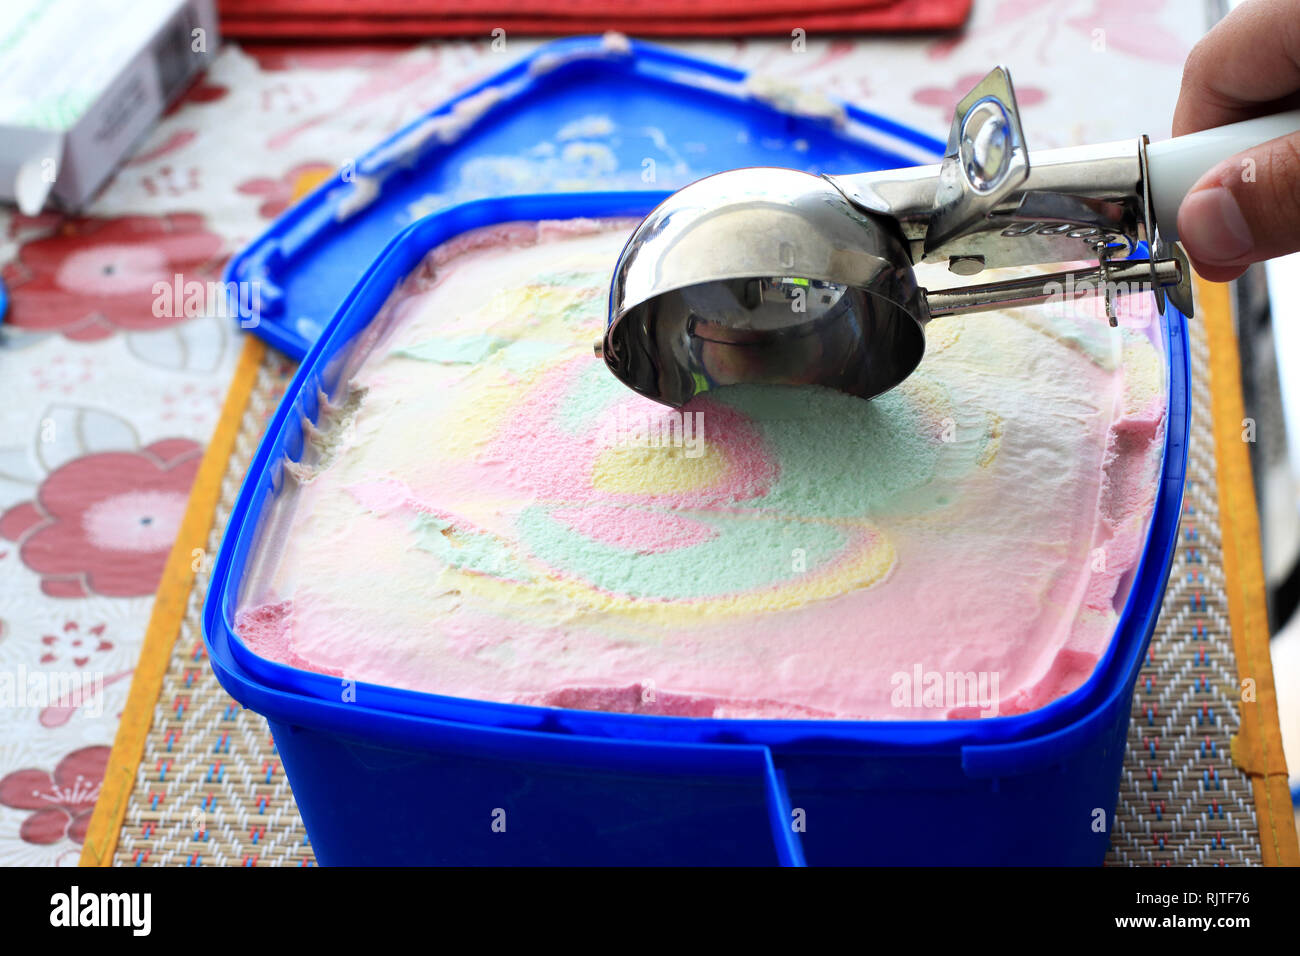 Rainbow helado multicolor Foto de stock